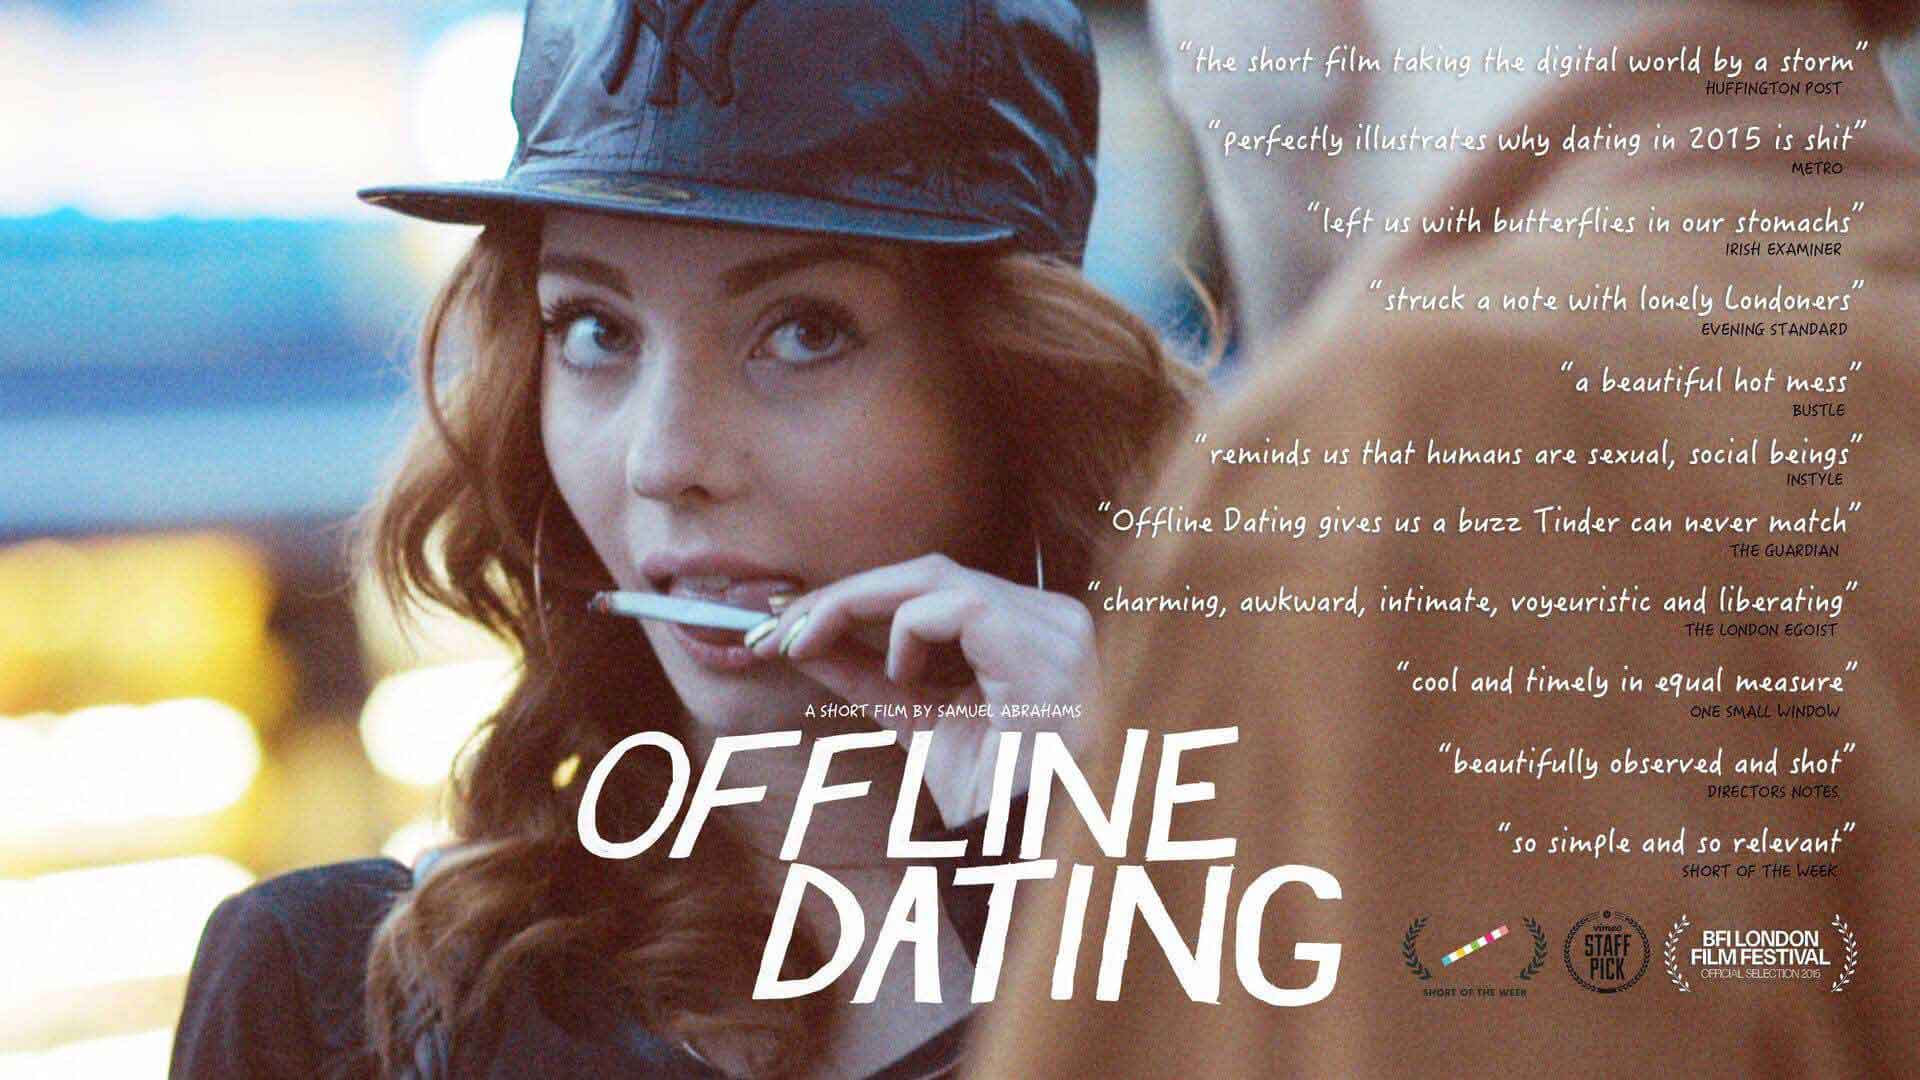 Offline dating